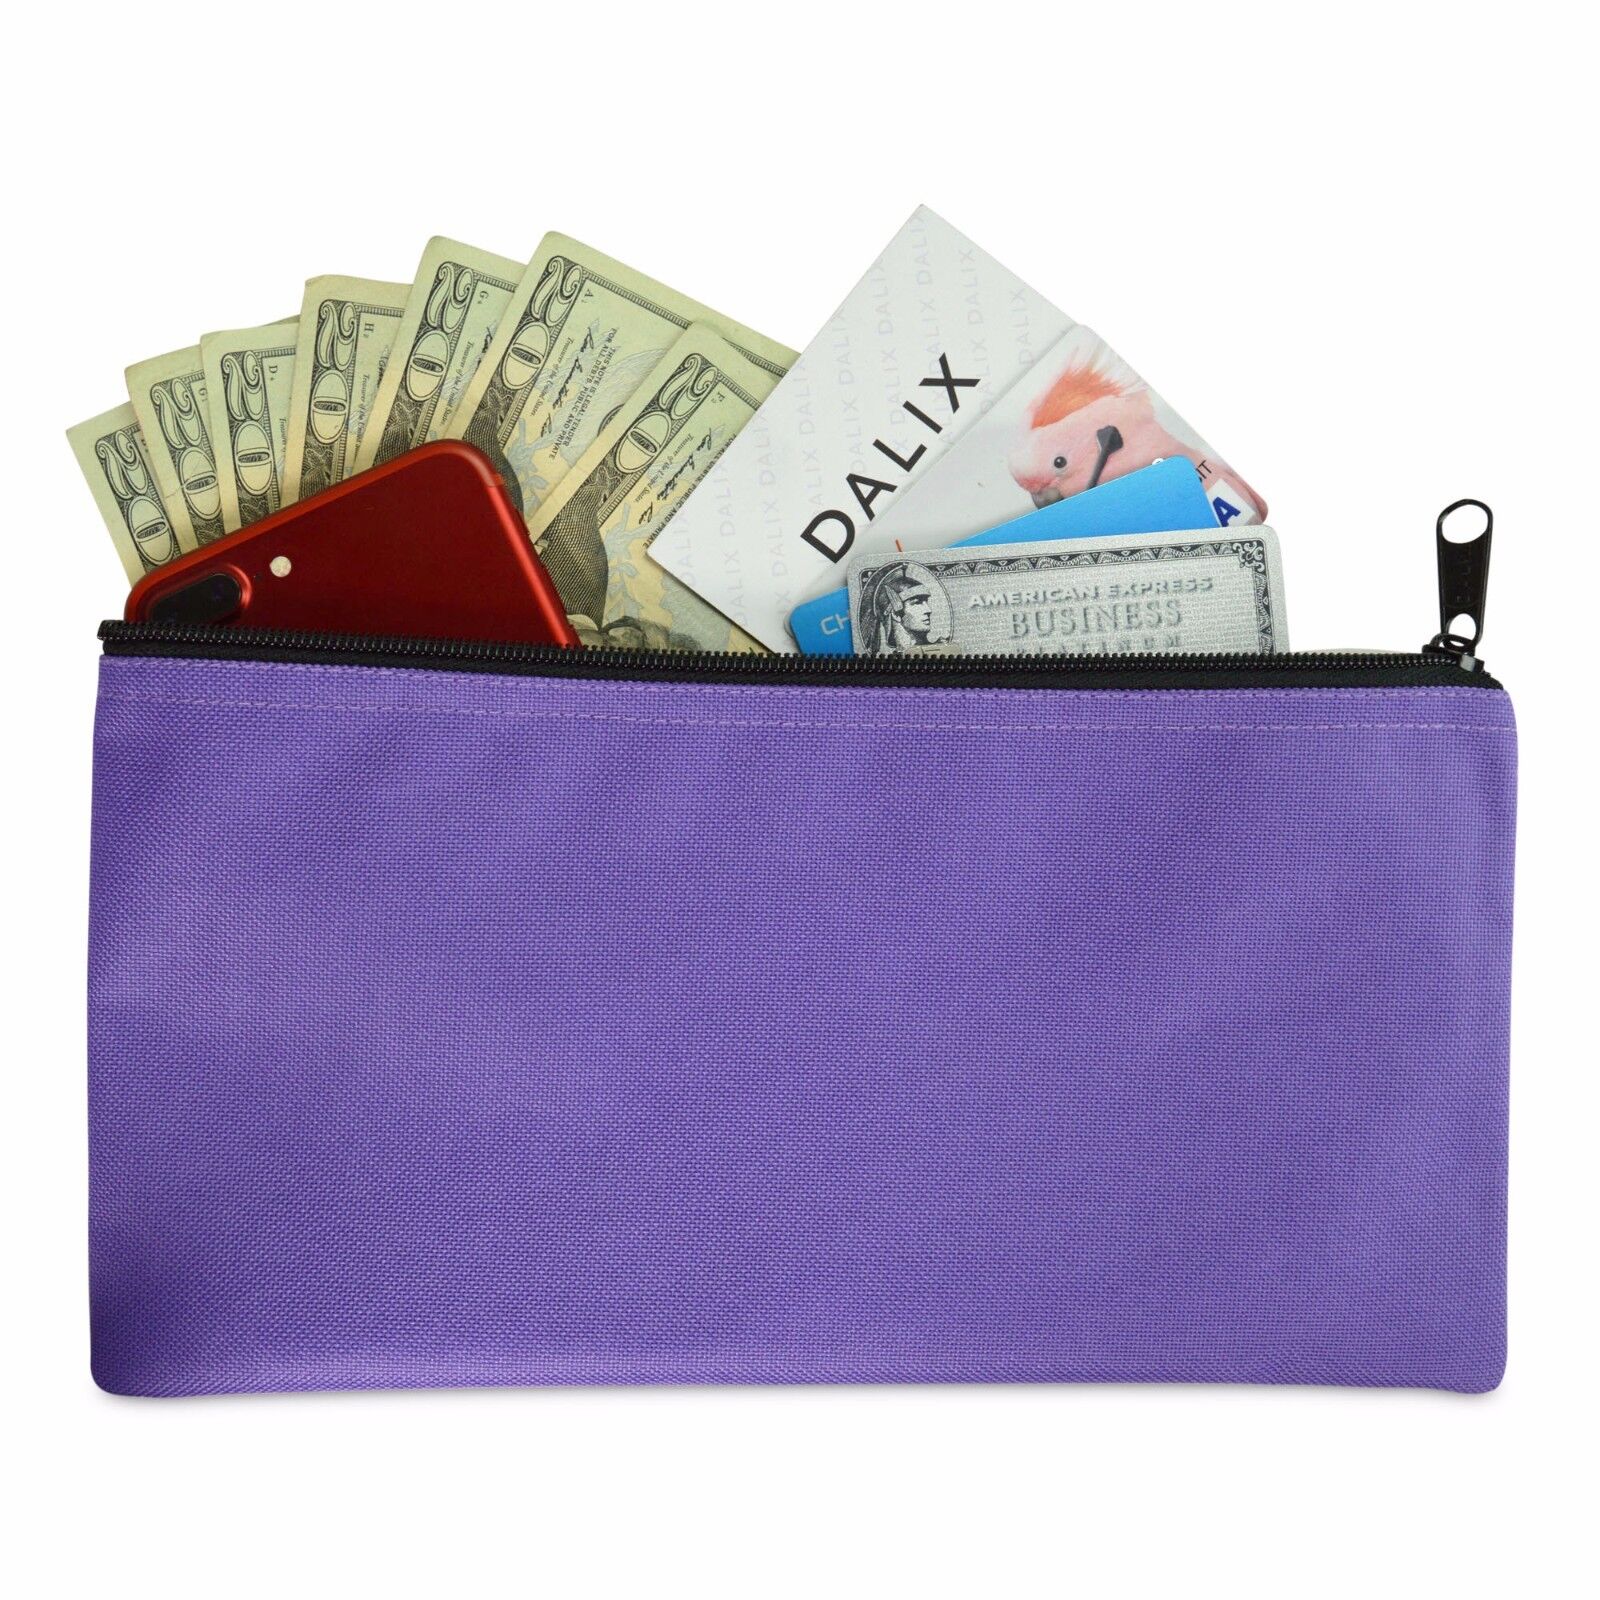 DALIX Zipper Money Bank Bag Pencil Pouch Makeup Travel Accessories Holder Purple